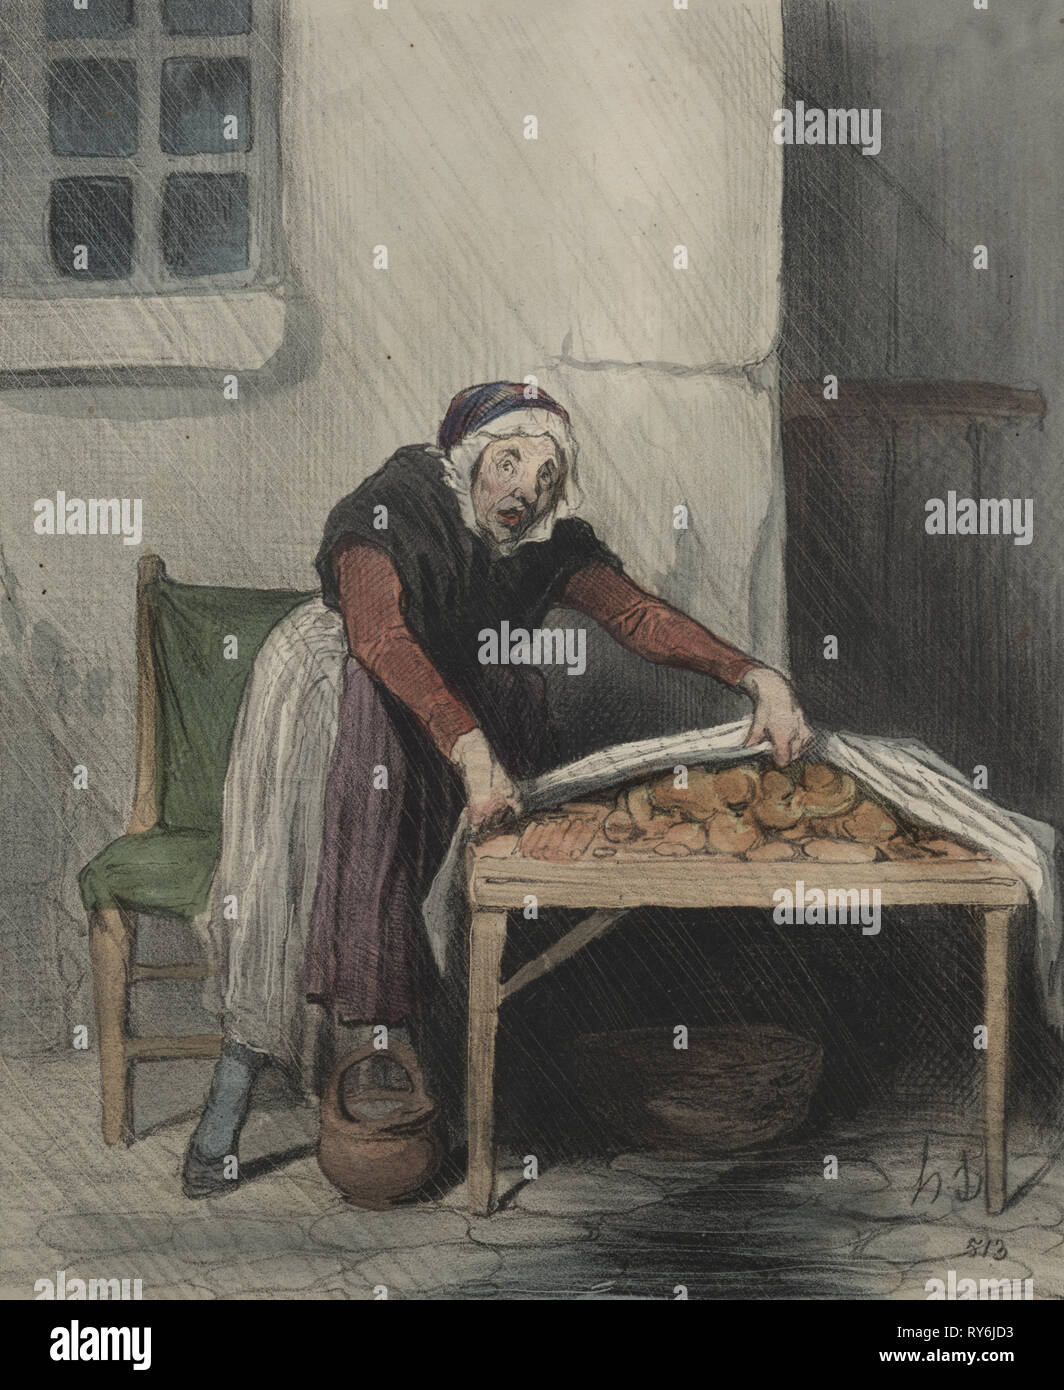 In le Charivari (keine du 24 Novembre 1843) veröffentlicht: Die Kapitel der Interpretationen, Platte 8: Jedem brennen fürchtet kaltes Wasser, 1843. Honoré Daumier (Französisch, 1808-1879), Aubert. Lithographie mit hand-Färbung; Blatt: 33,8 x 24,7 cm (13 5/16 x 9 3/4 in.); Bild: 24,2 x 19,9 cm (9 1/2 x 7 13/16 in Stockfoto